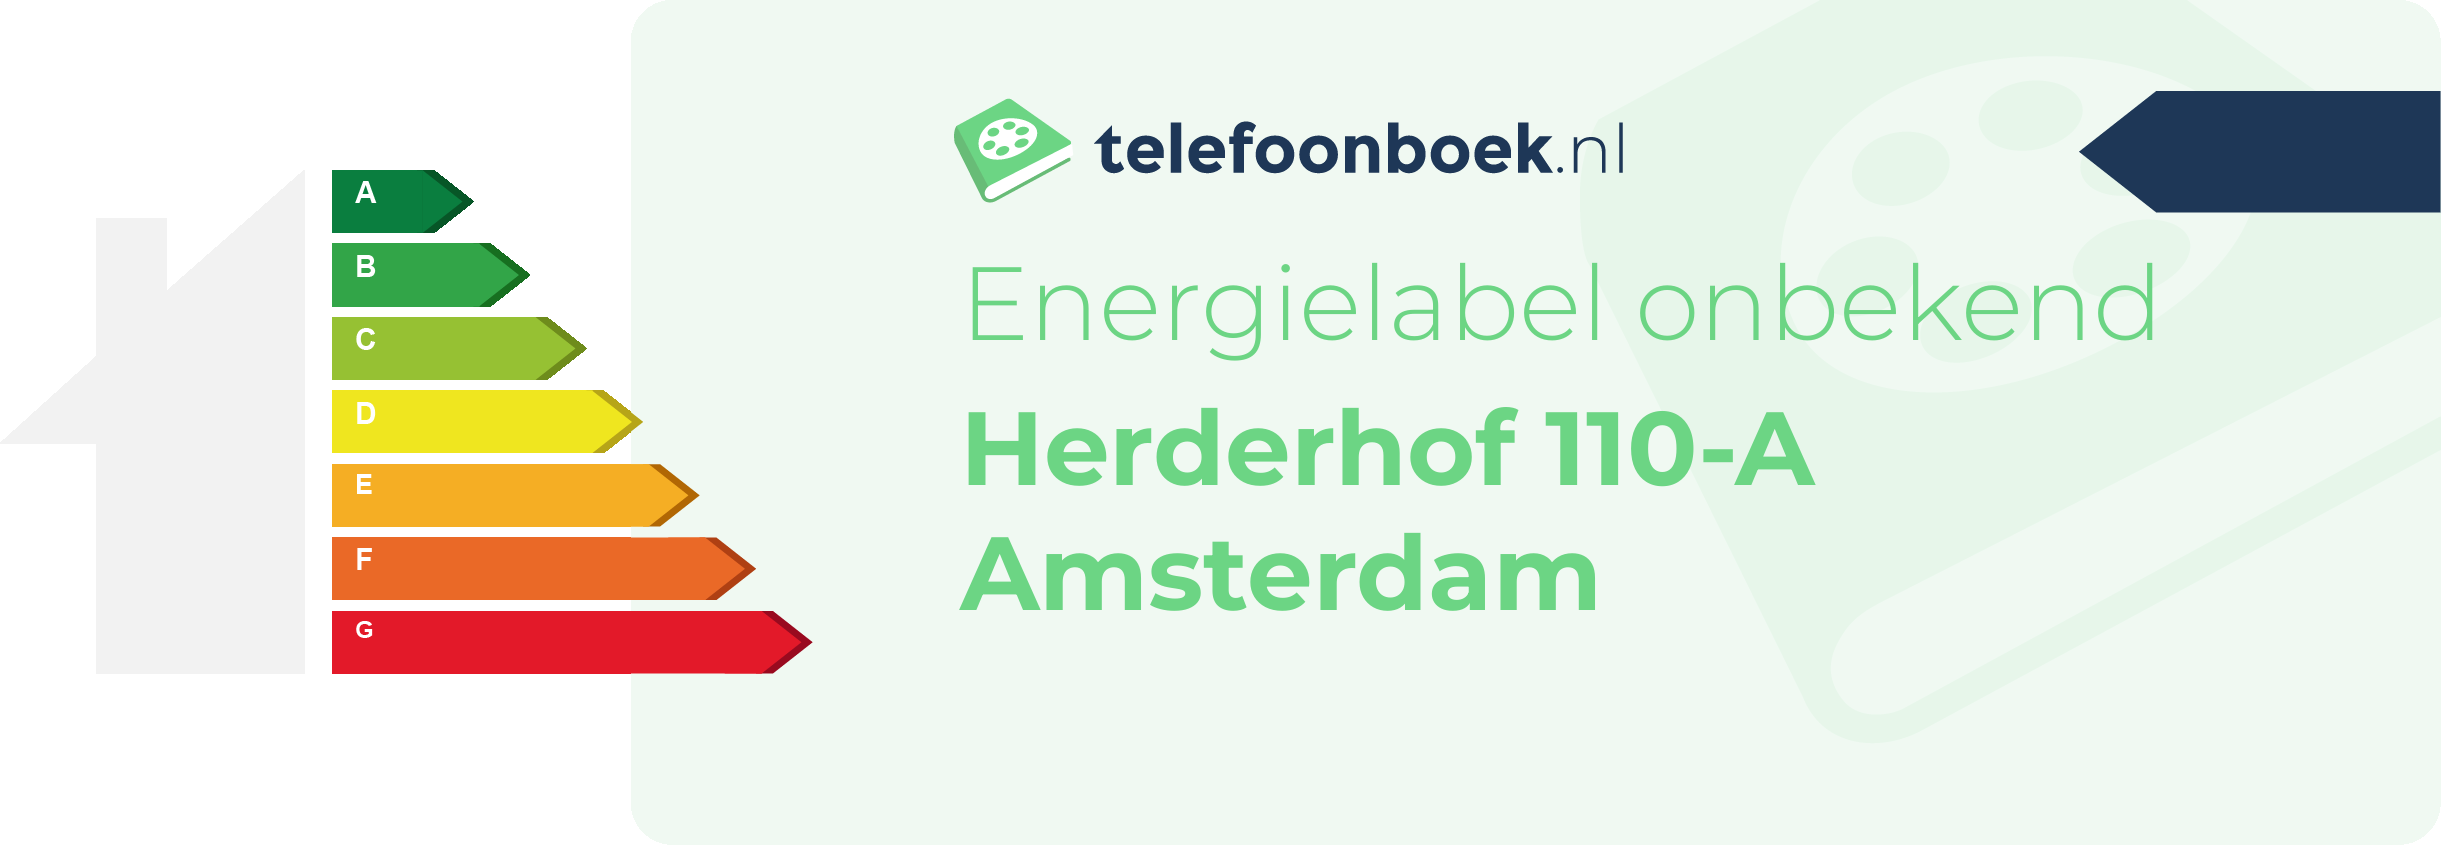 Energielabel Herderhof 110-A Amsterdam